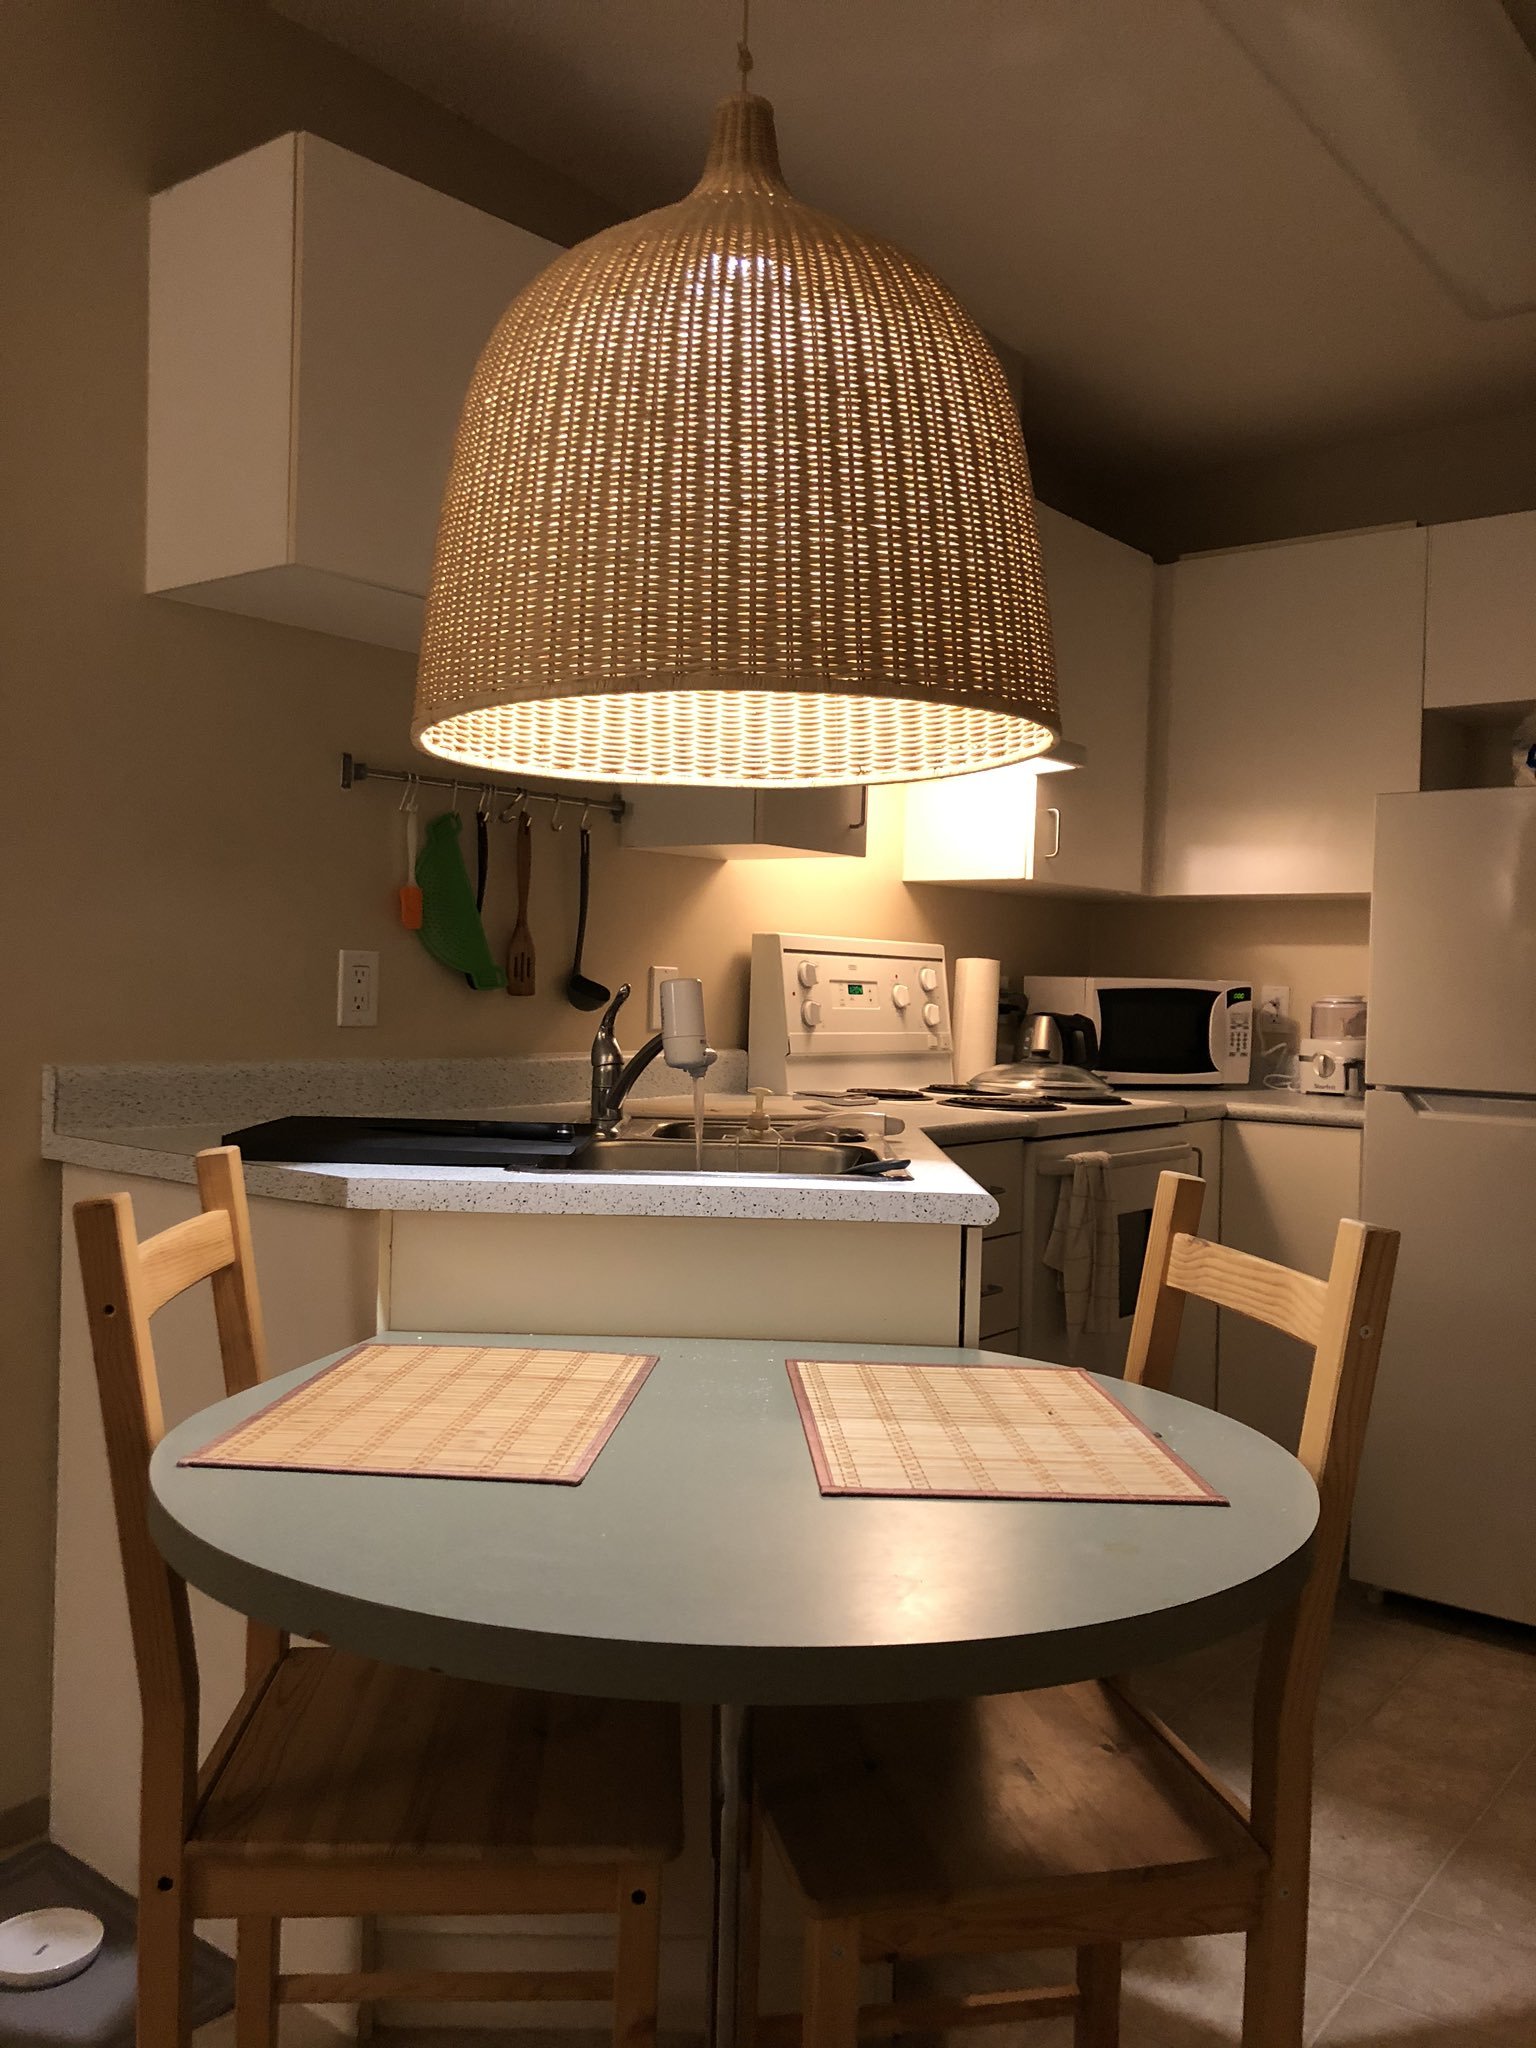 светильники над кухонным столом в интерьере